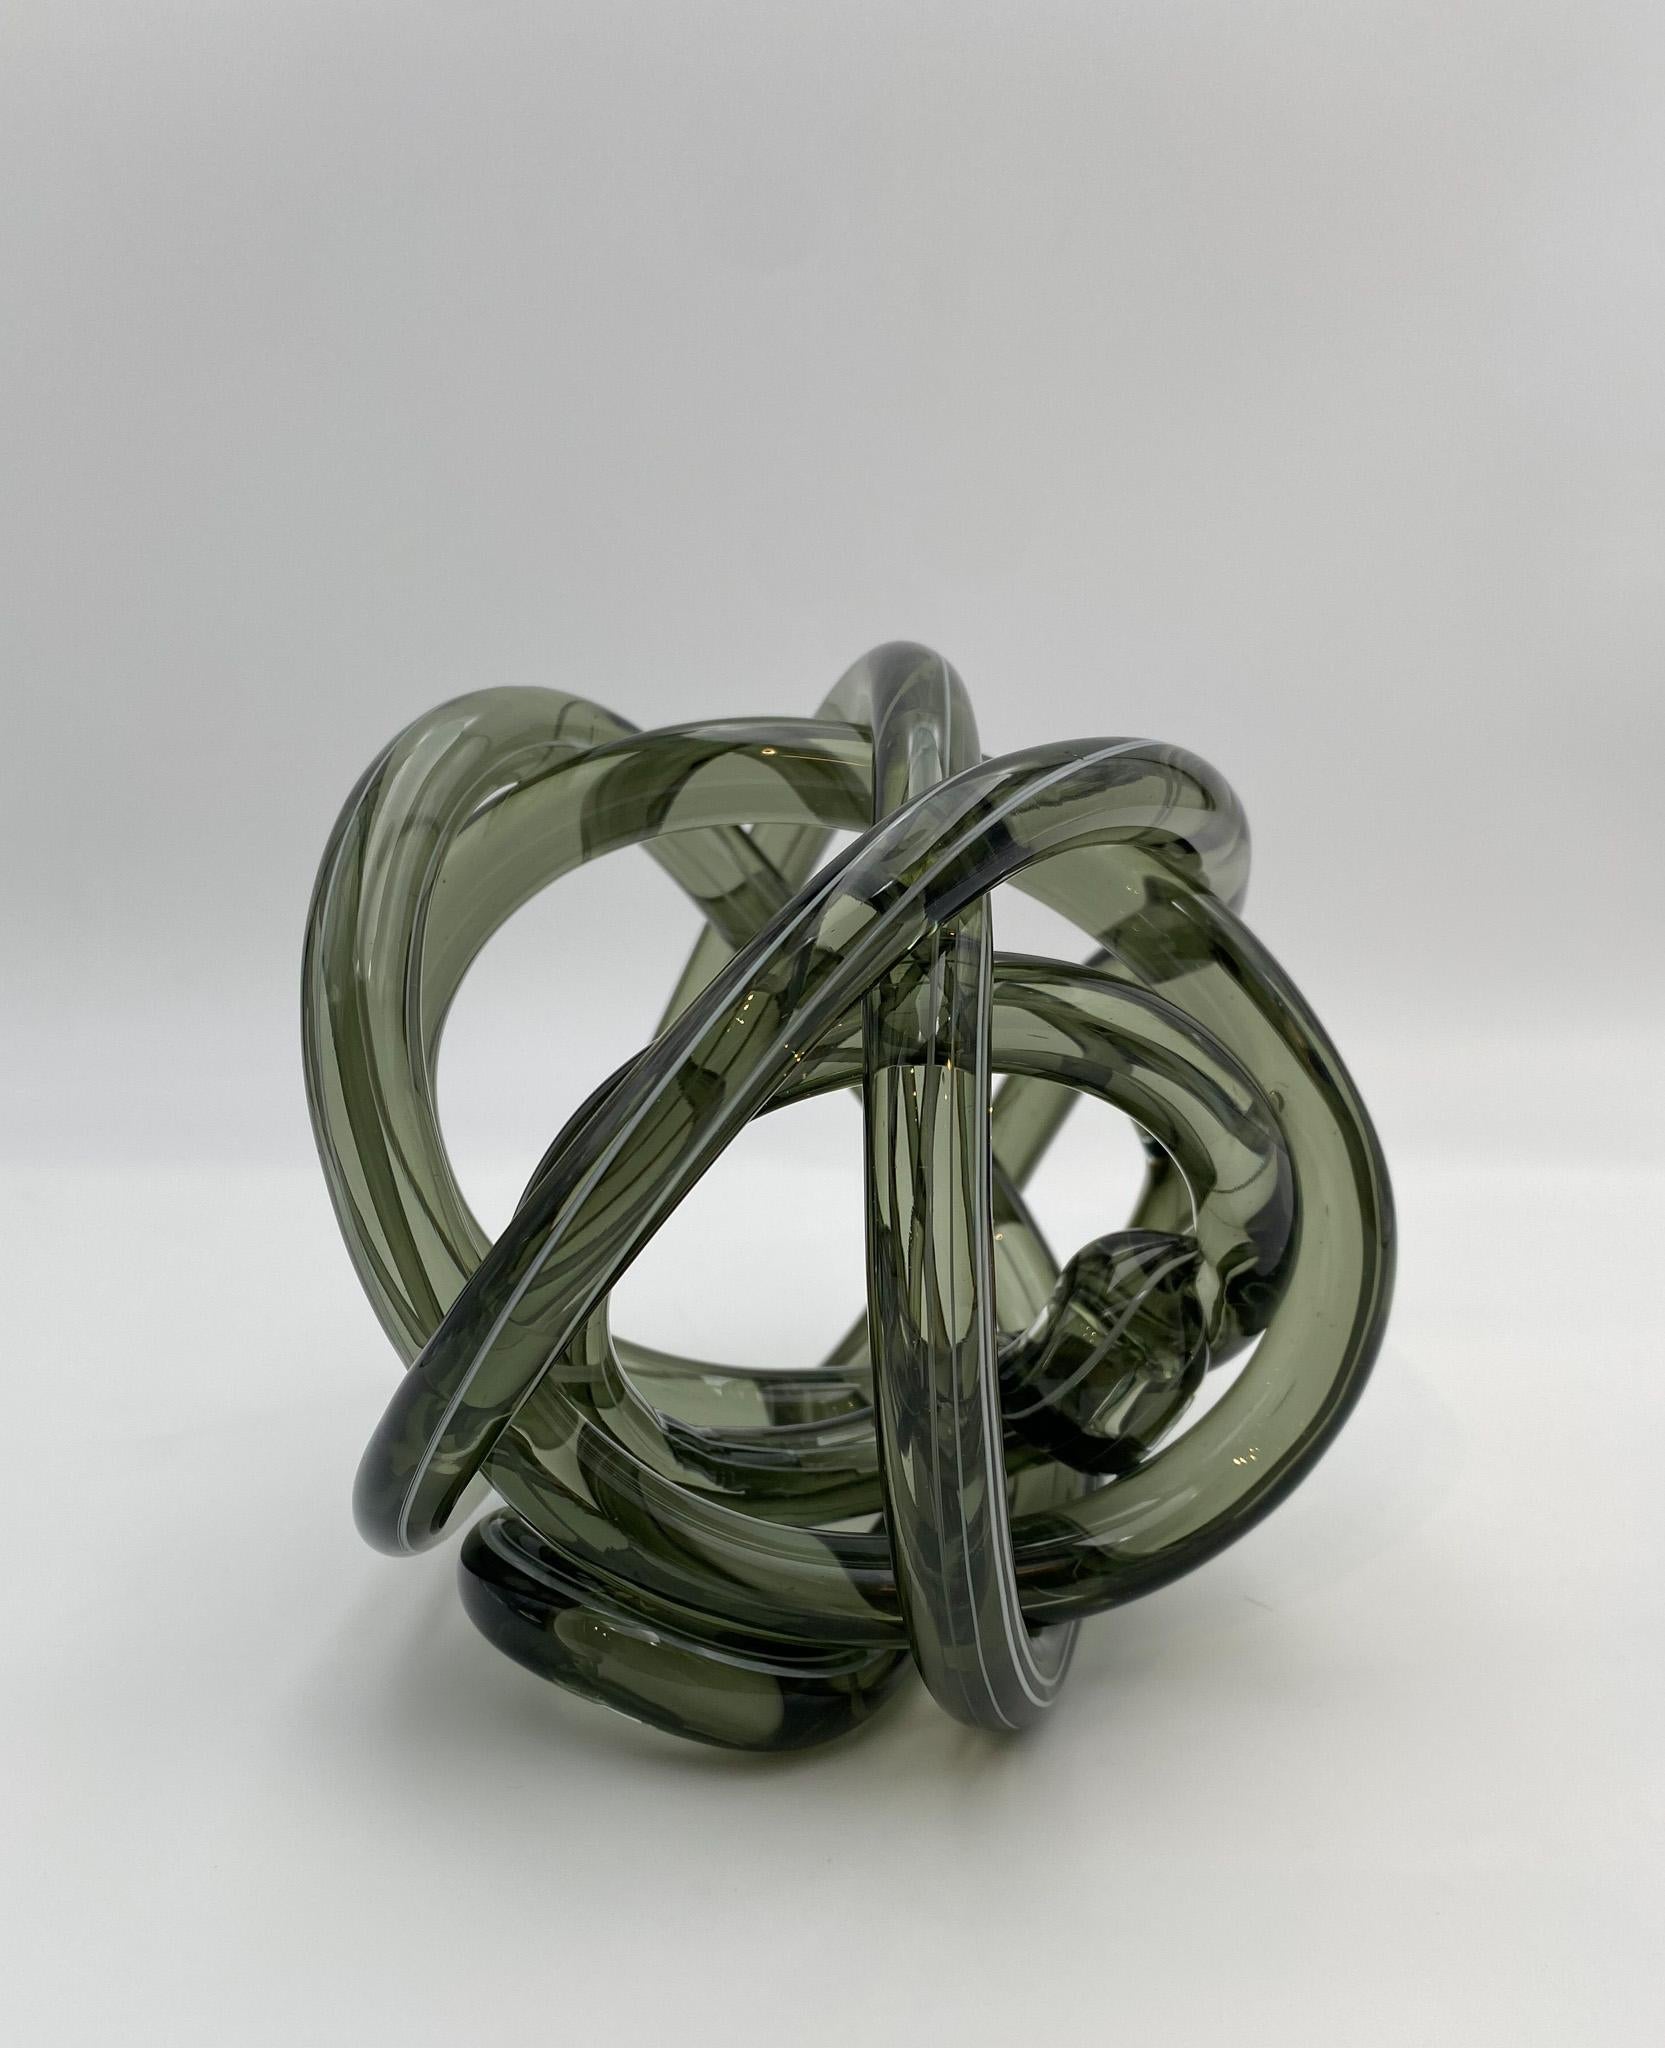 Abstract Art Glass Knot Sculpture  4